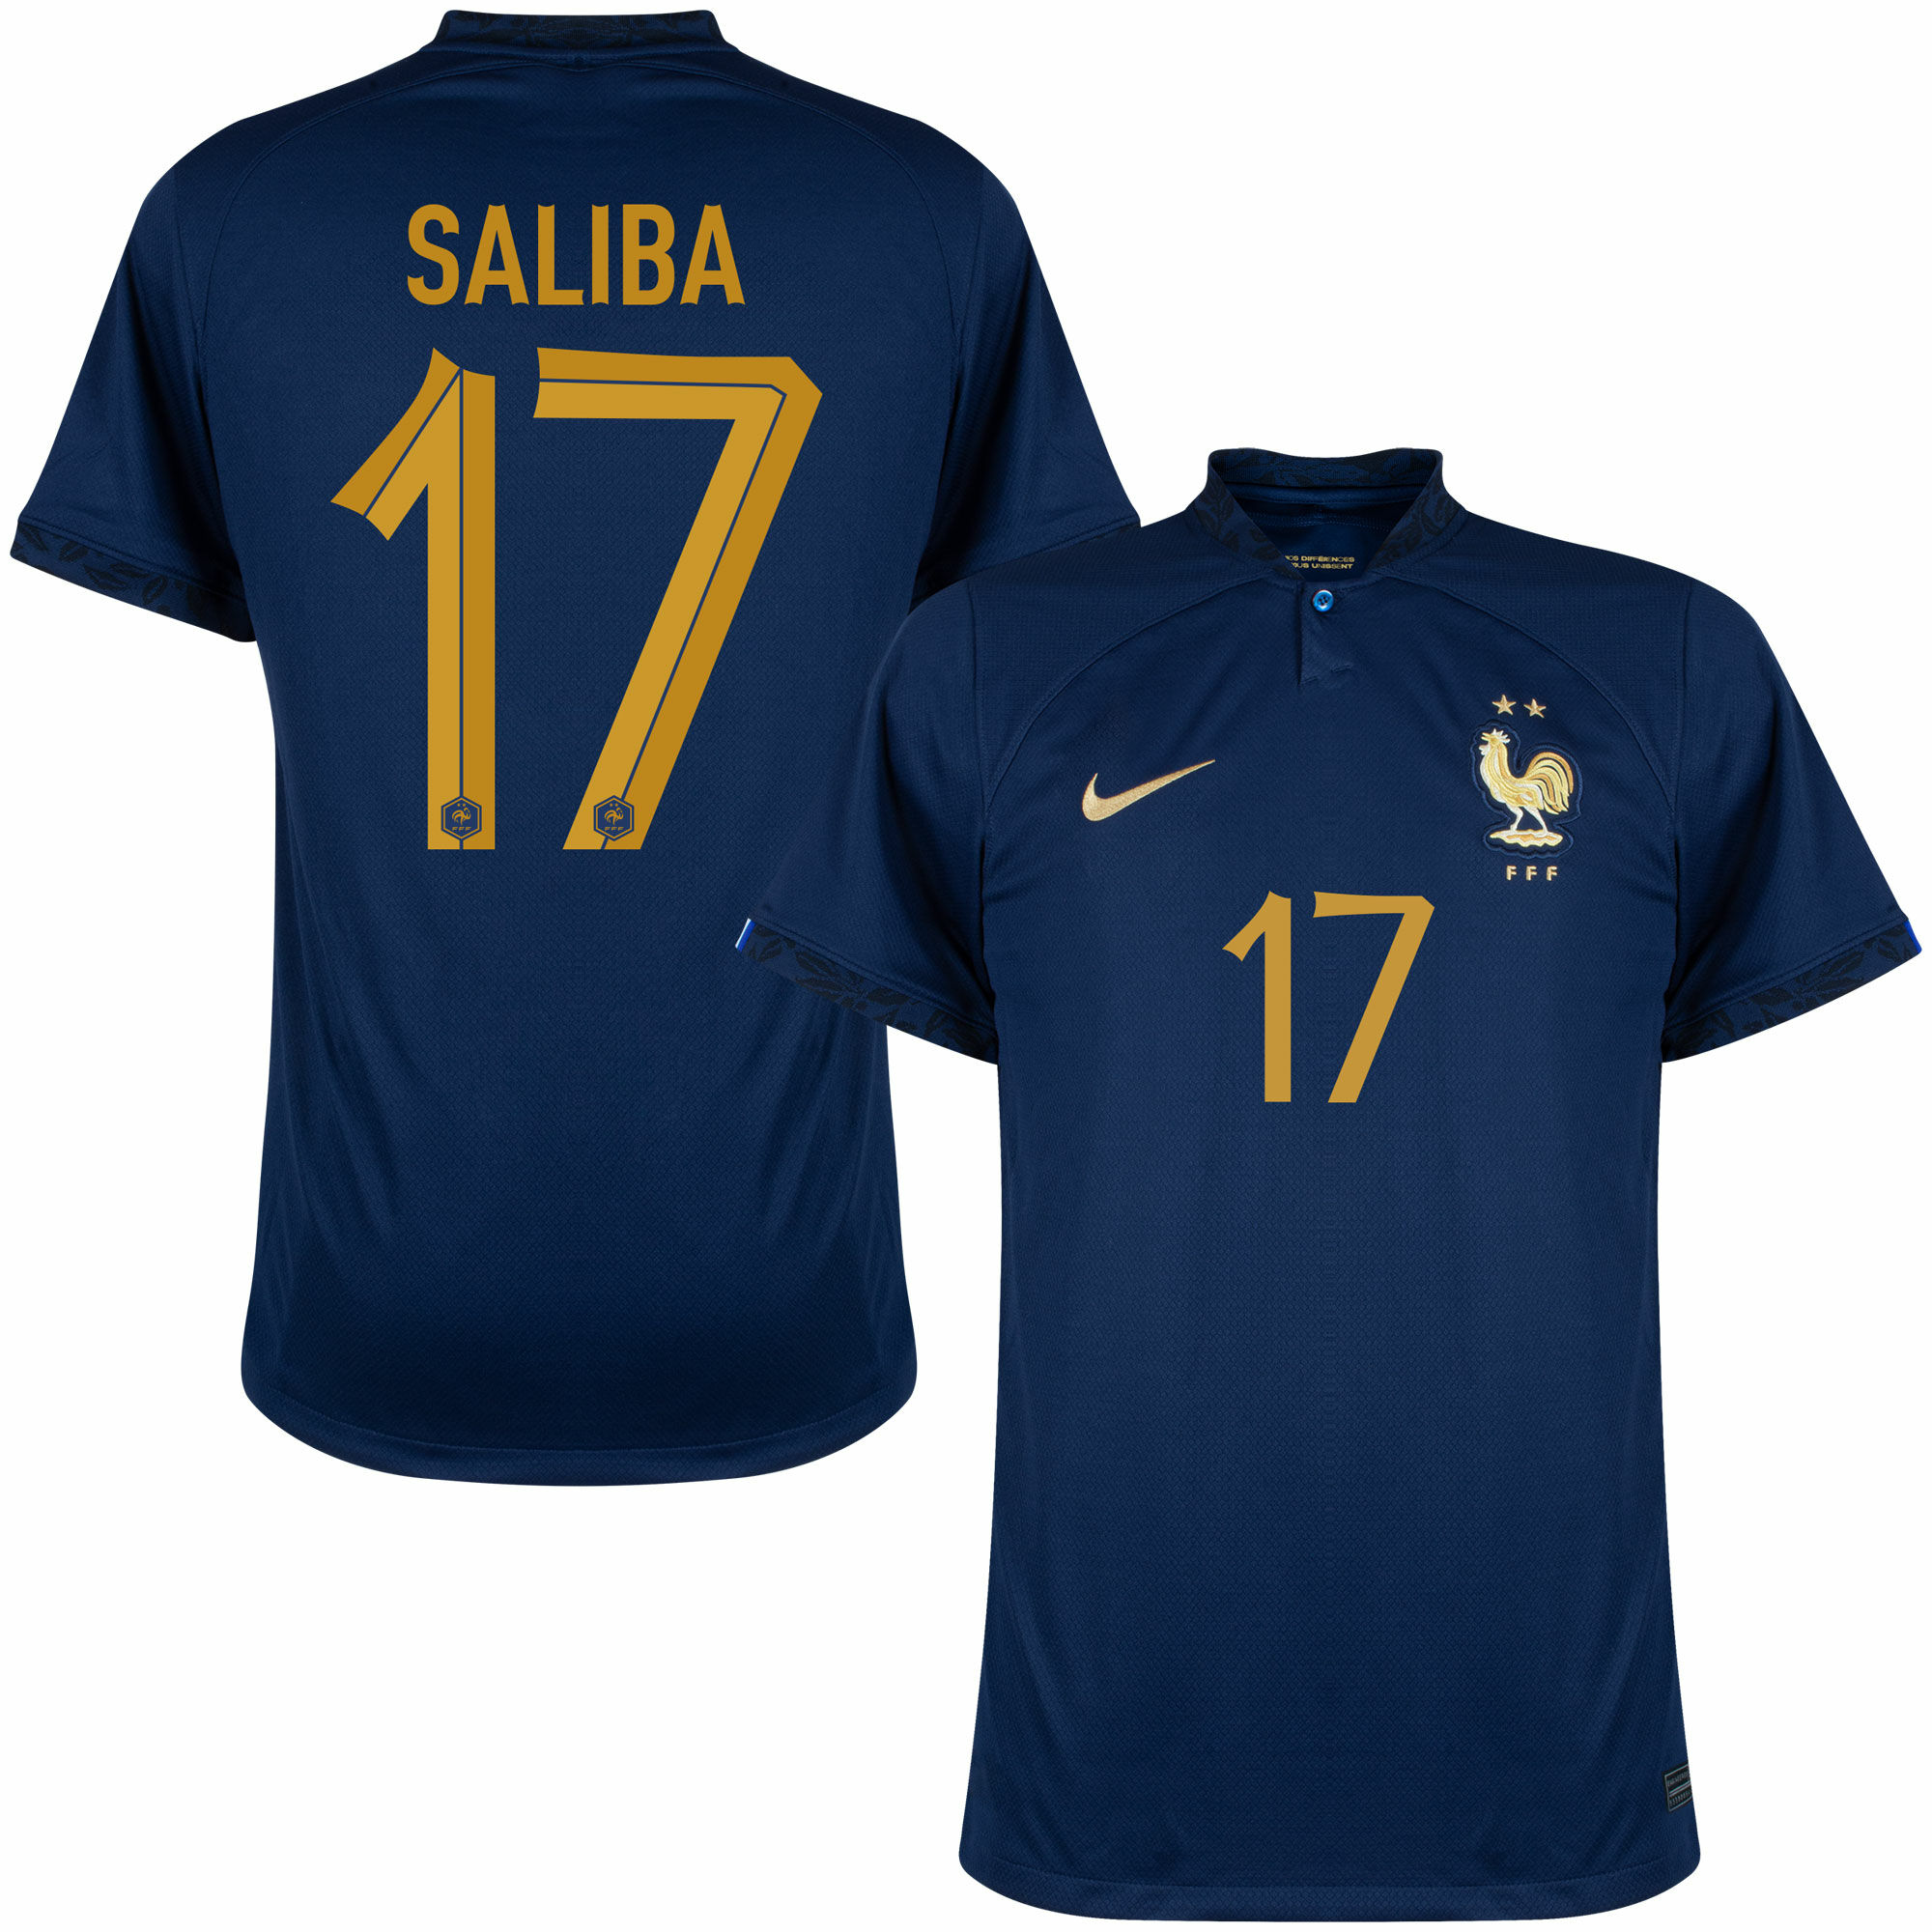 Francie - Dres fotbalový - číslo 17, oficiální potisk, William Saliba, domácí, sezóna 2022/23, modrý